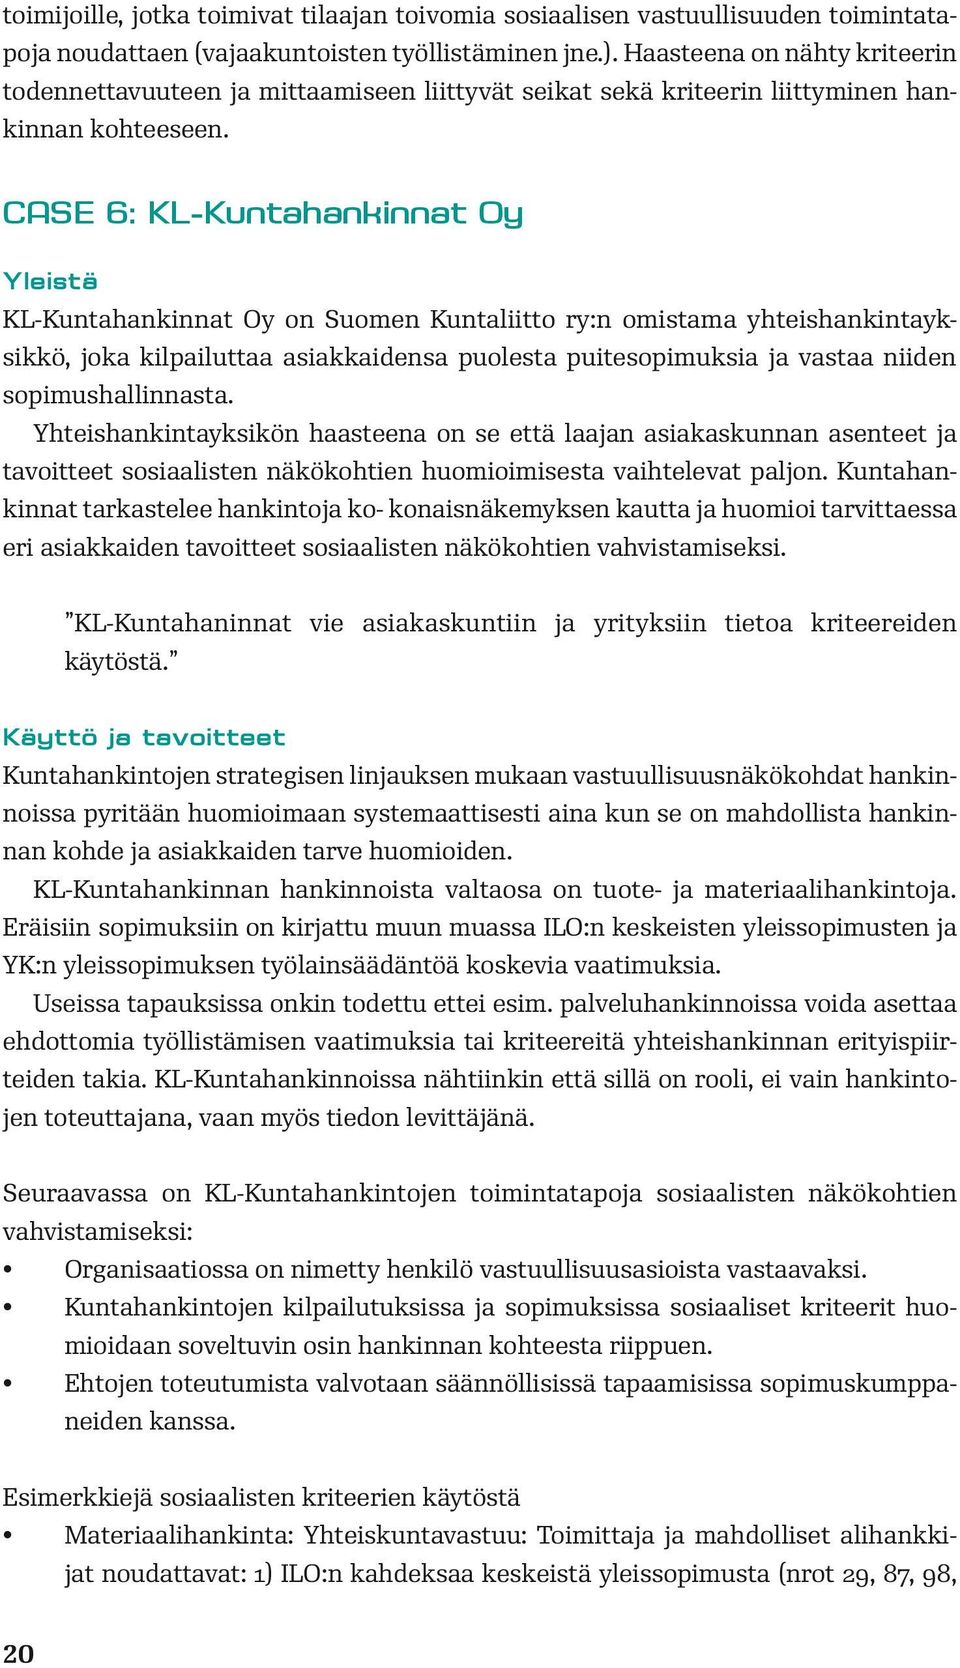 CASE 6: KL-Kuntahankinnat Oy Yleistä KL-Kuntahankinnat Oy on Suomen Kuntaliitto ry:n omistama yhteishankintayksikkö, joka kilpailuttaa asiakkaidensa puolesta puitesopimuksia ja vastaa niiden